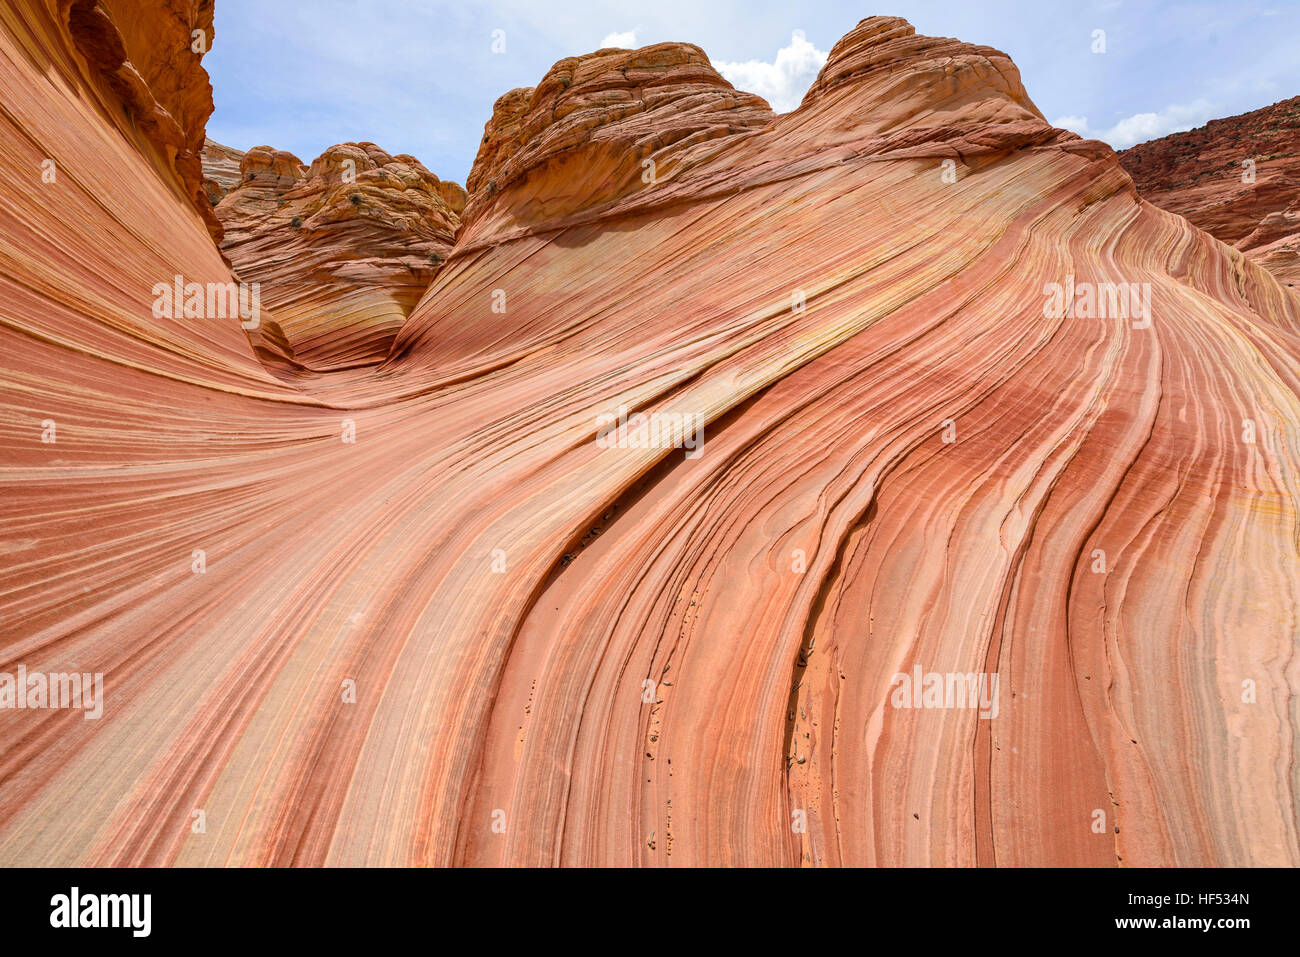 Arenaria Buttes - arenaria colorata buttes alla periferia della forma d'onda, una drastica erosione di roccia arenaria formazione, Utah, Stati Uniti d'America. Foto Stock